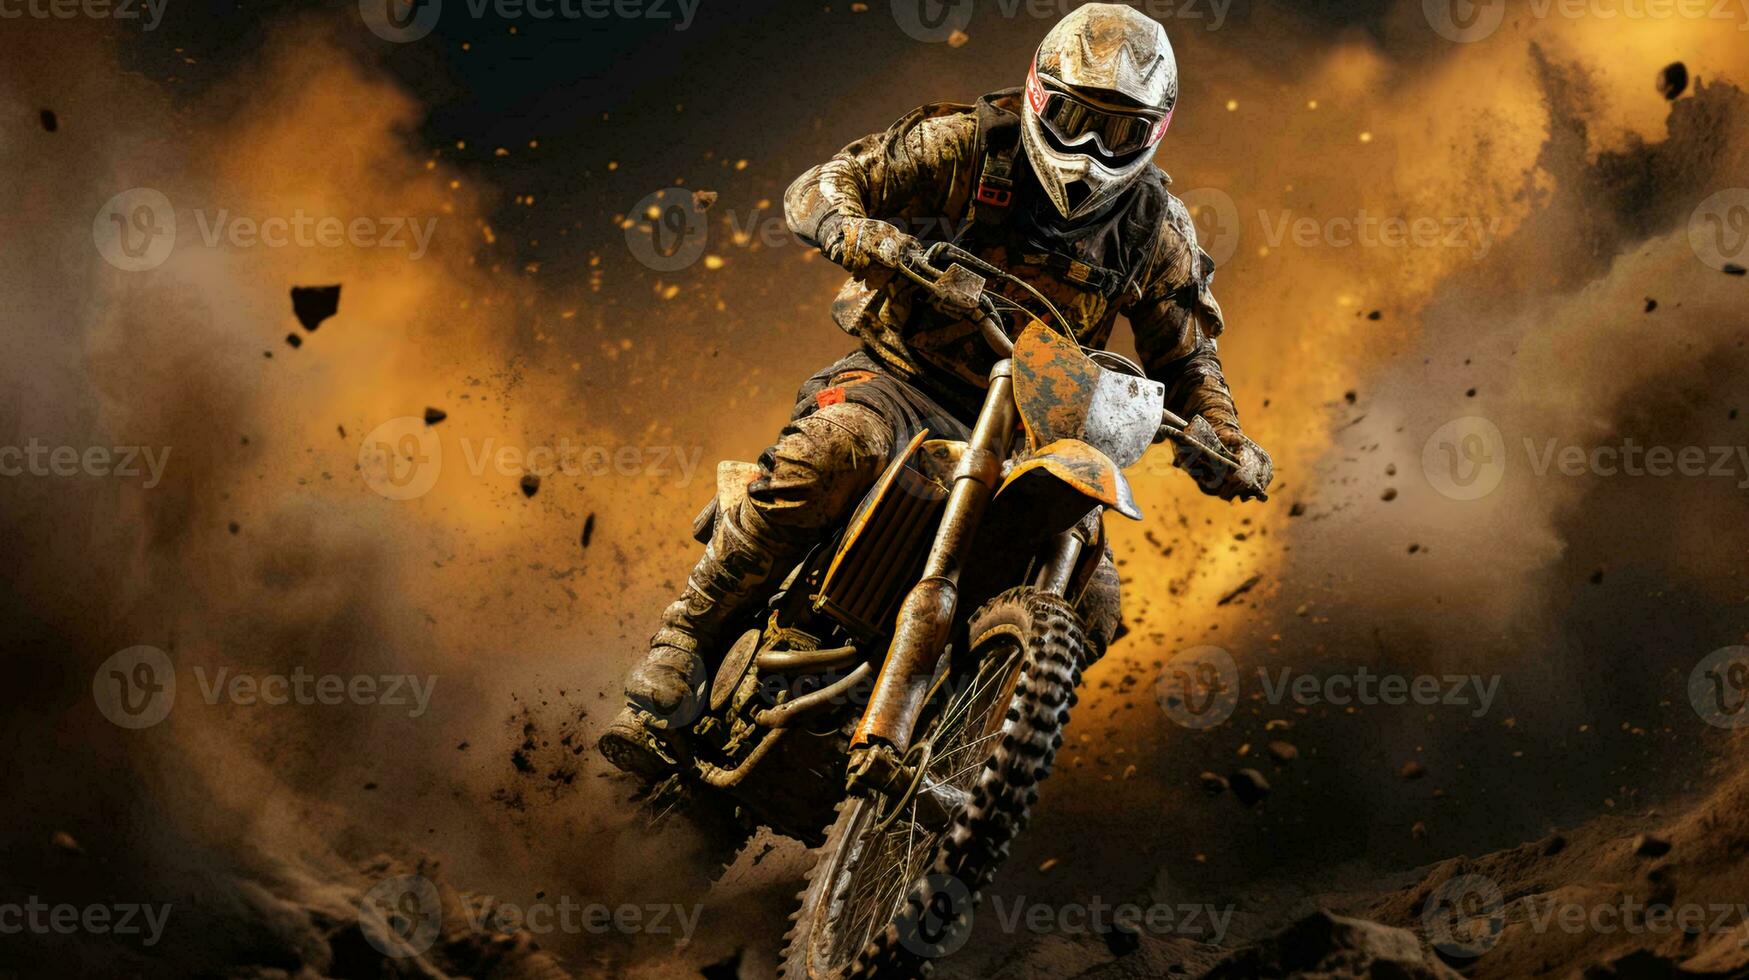 en motorcyklist på en motorcykel snabbt rider genom de smuts och damm på de Spår under en cross konkurrens foto